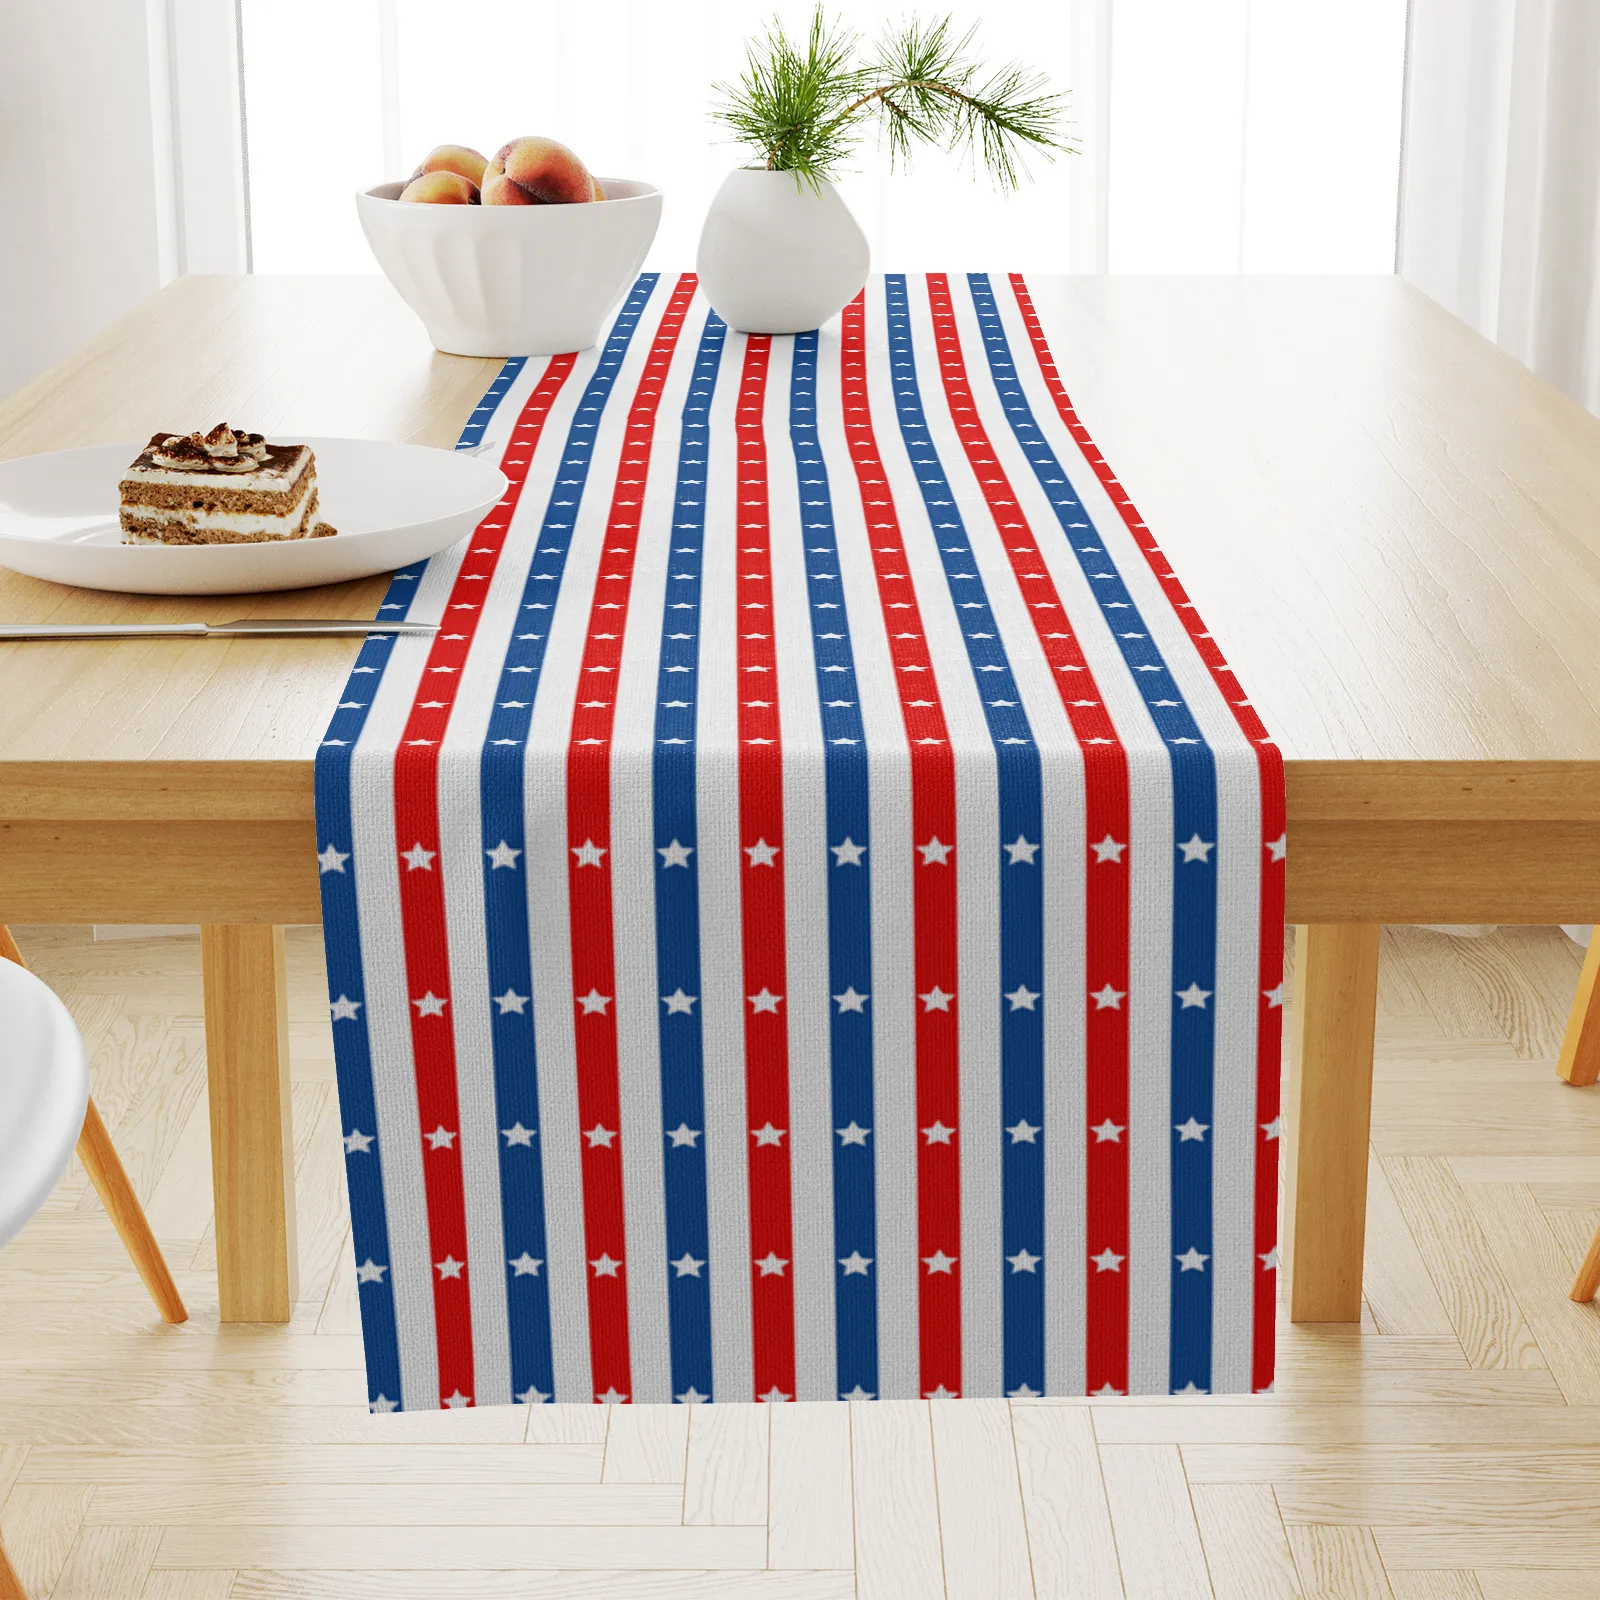 American Independence Day Drukowane stolik z drukowanym stołem amerykański salon stół do jadalni dekoracyjny festiwal stolik kawowy